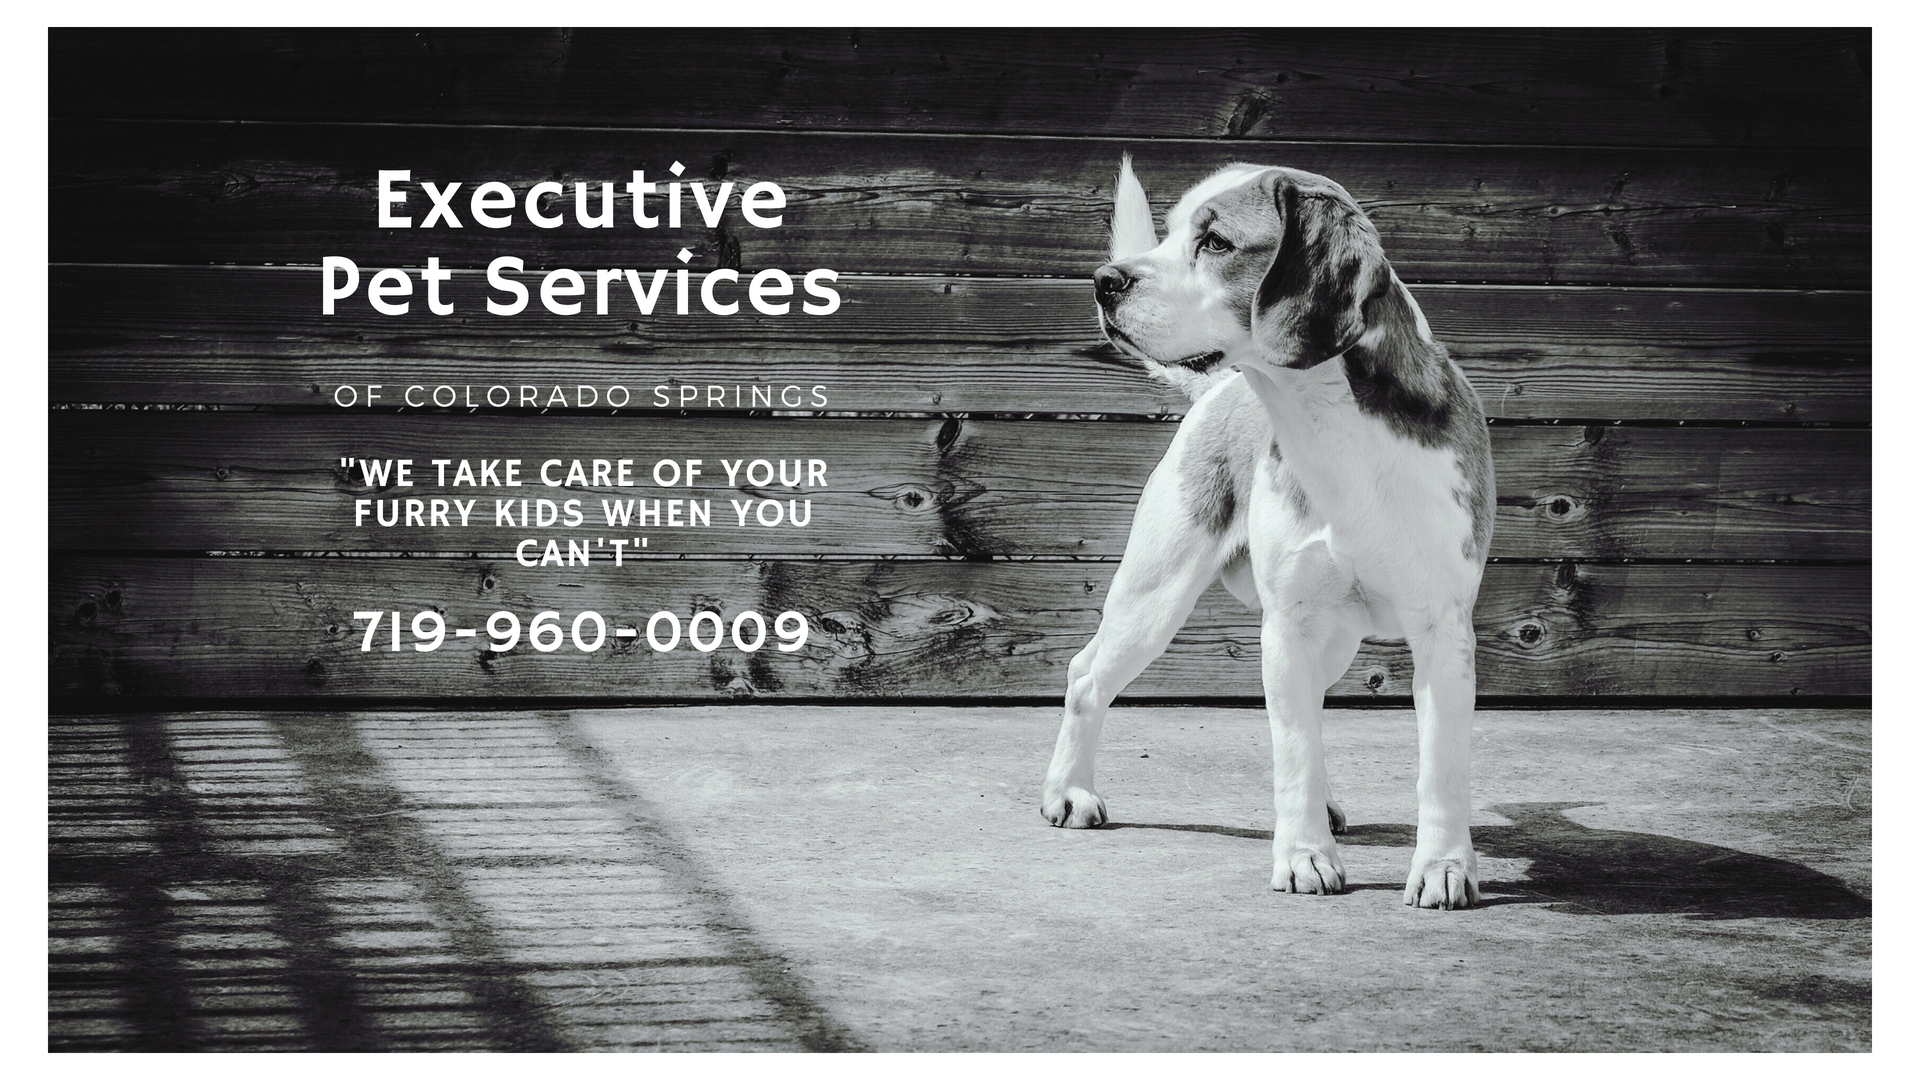 Executive Pet Services of Colorado Springs